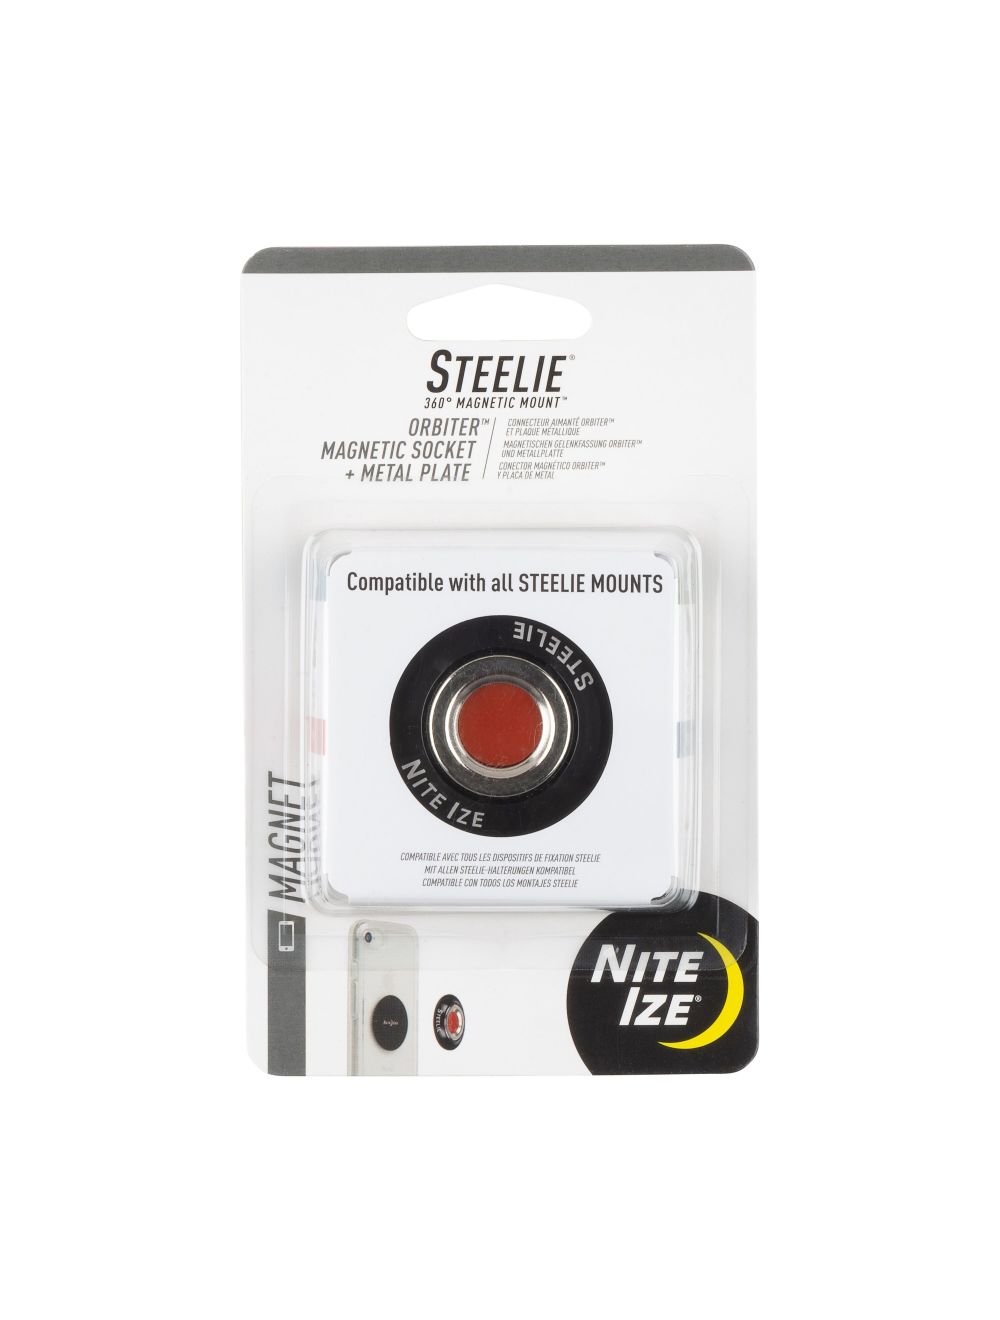 Steelie Orbiter Magnetic Socket + Metal Plate